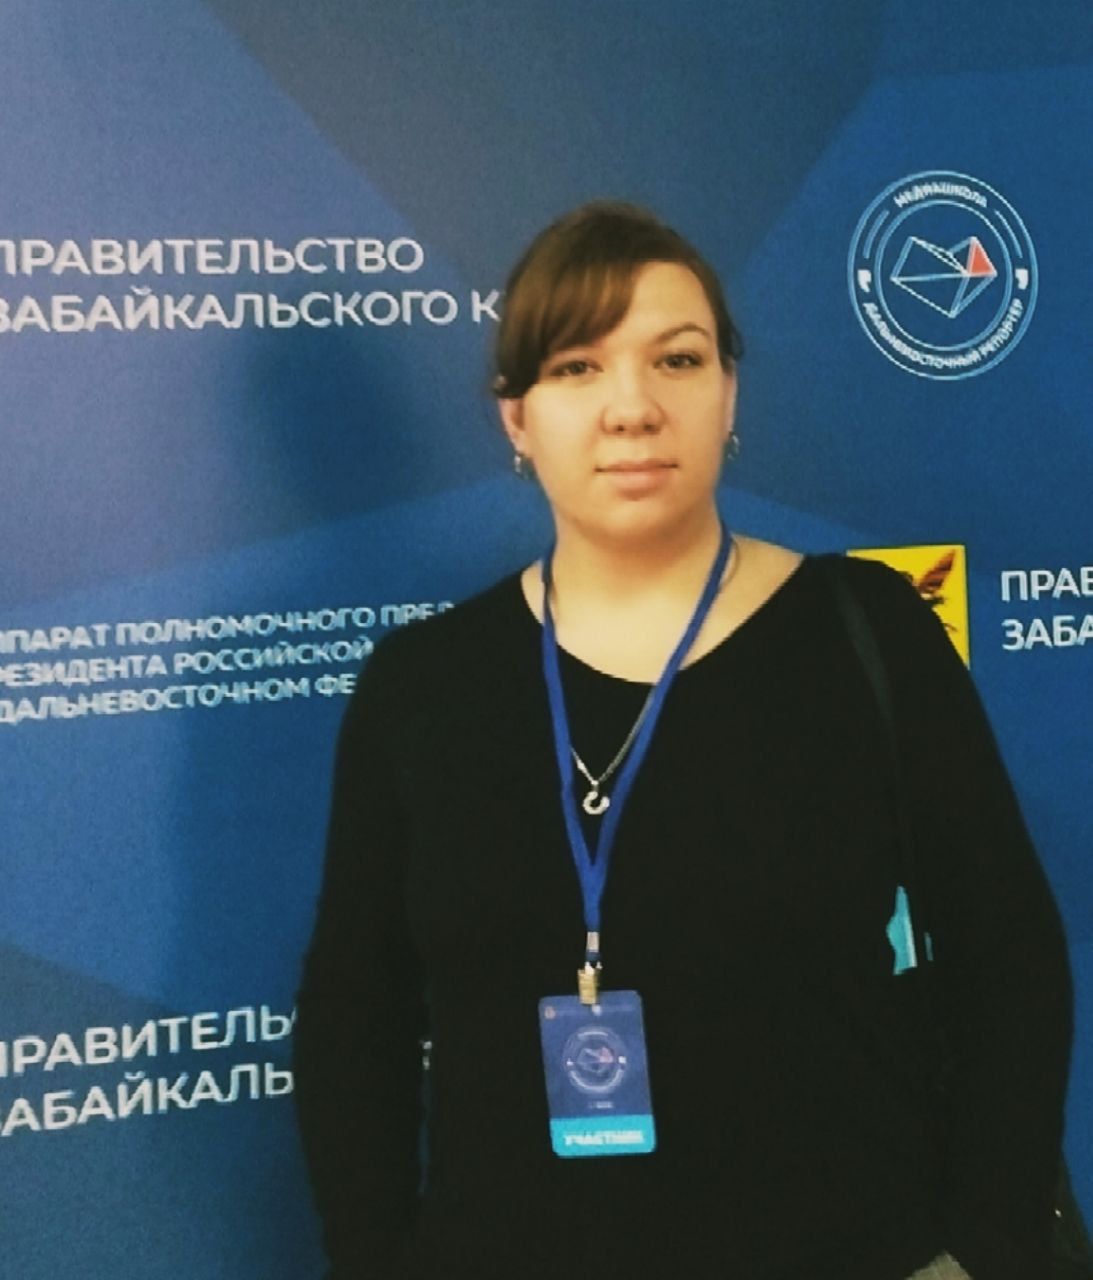 Ирина Усанова вошла в состав Комитета семей воинов Отечества Забайкалья